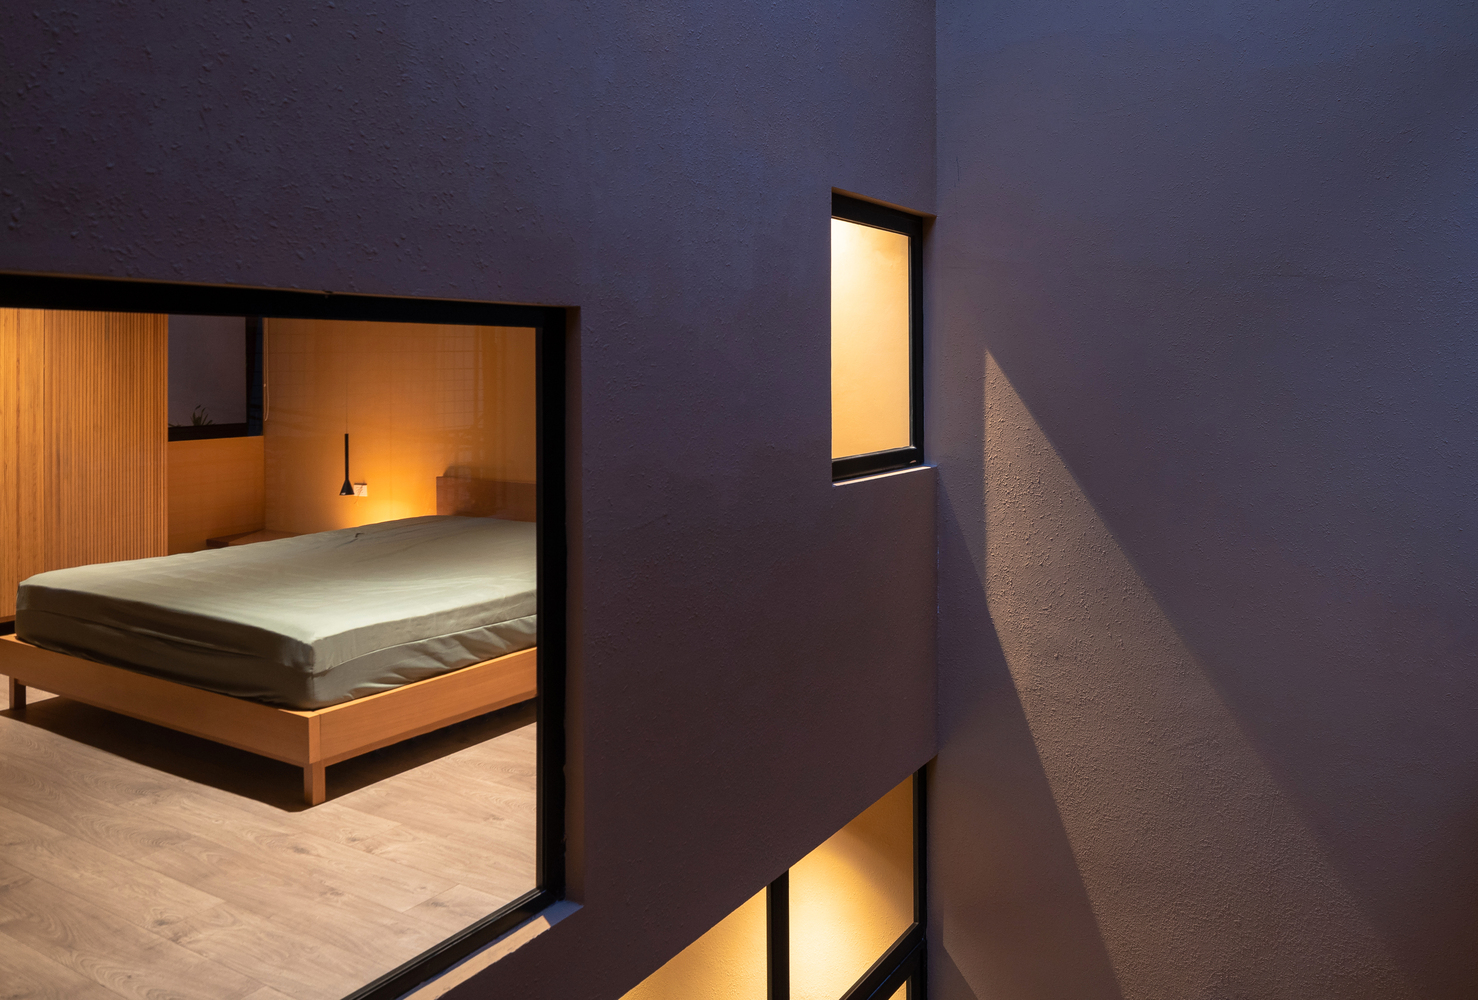 Phòng ngủ thiết kế đơn giản với nội thất cơ bản như giường ngủ, táp đầu giường, đèn gắn tường và tủ quần áo chiều cao kịch trần nhằm tối ưu hóa không gian.